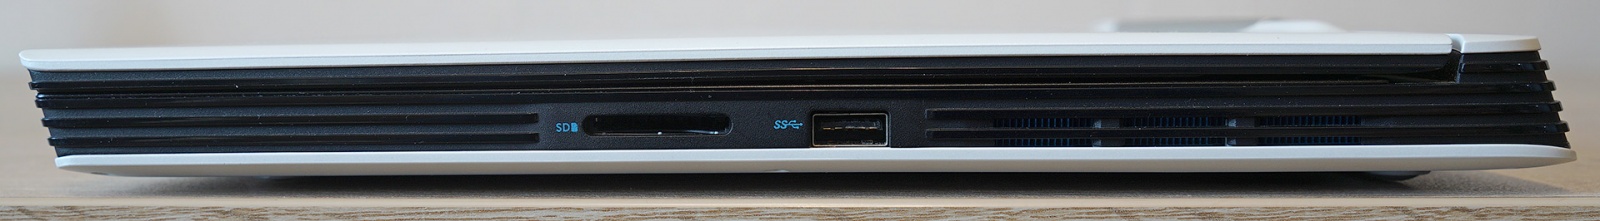 Dell G5 5590: один из самых доступных игровых ноутбуков с RTX 2060 - 10